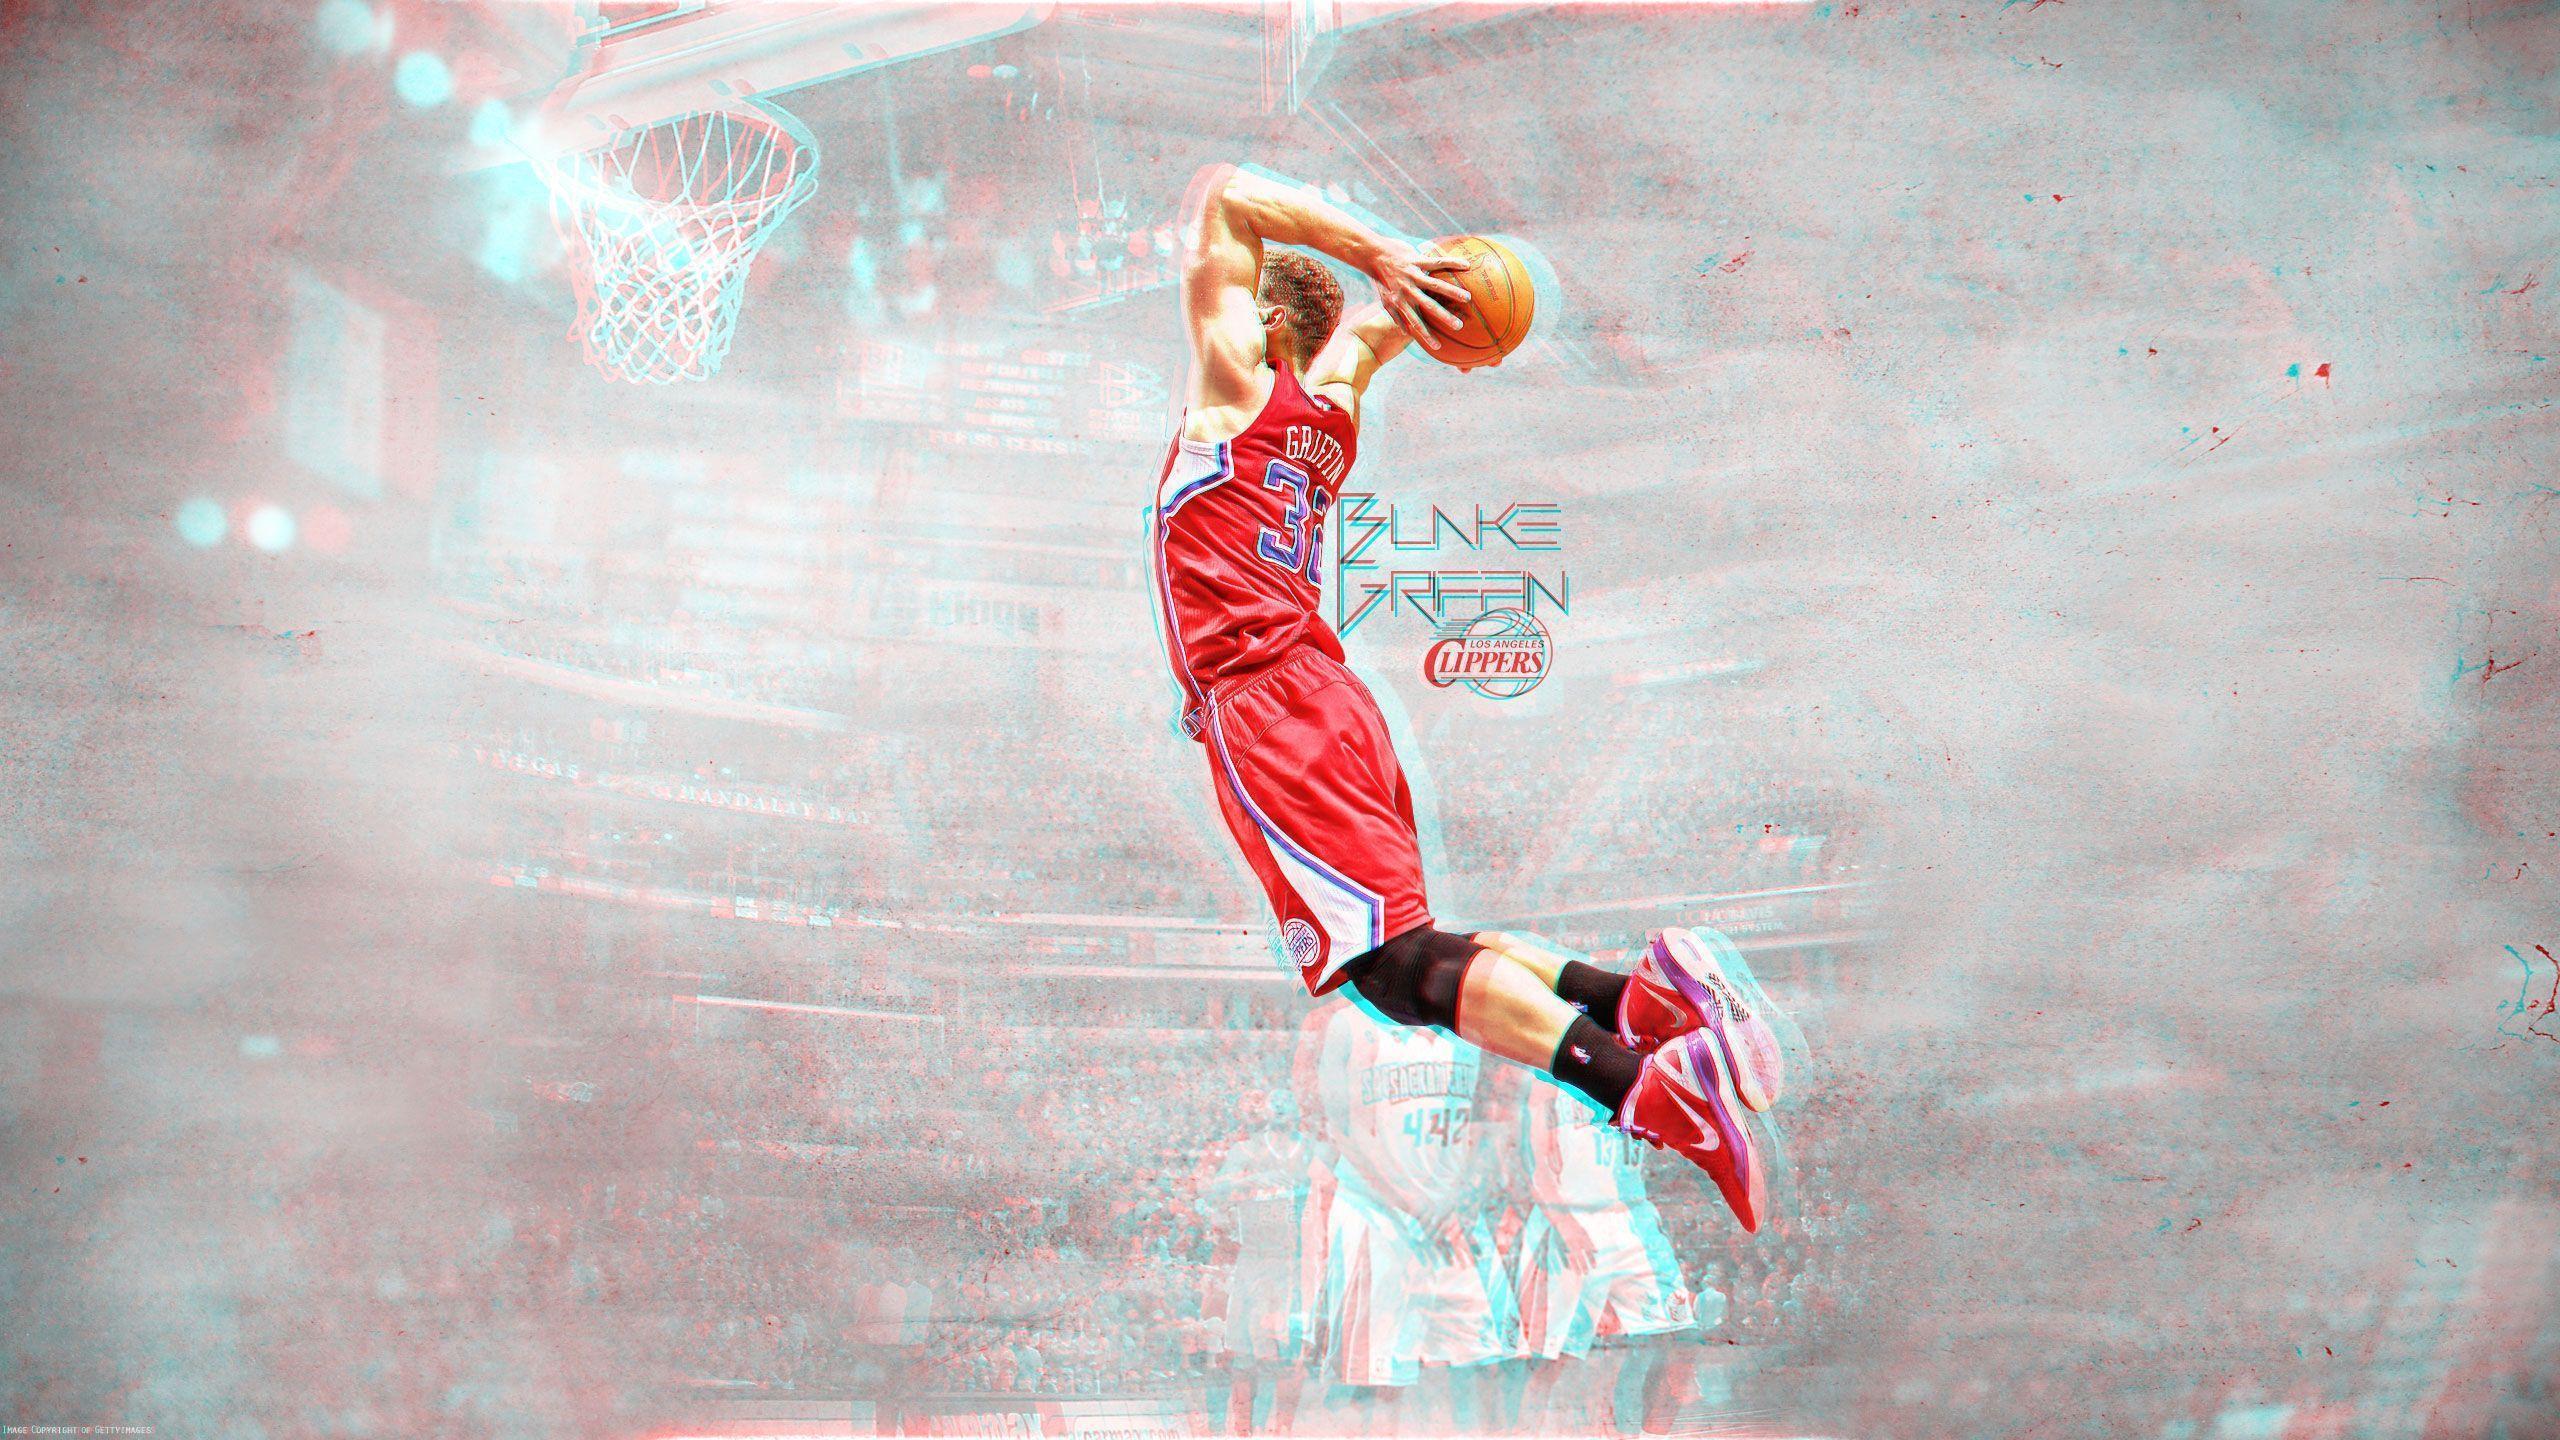 Blake Griffin Dunk 3D Wallpaper. Basketball Wallpaper at